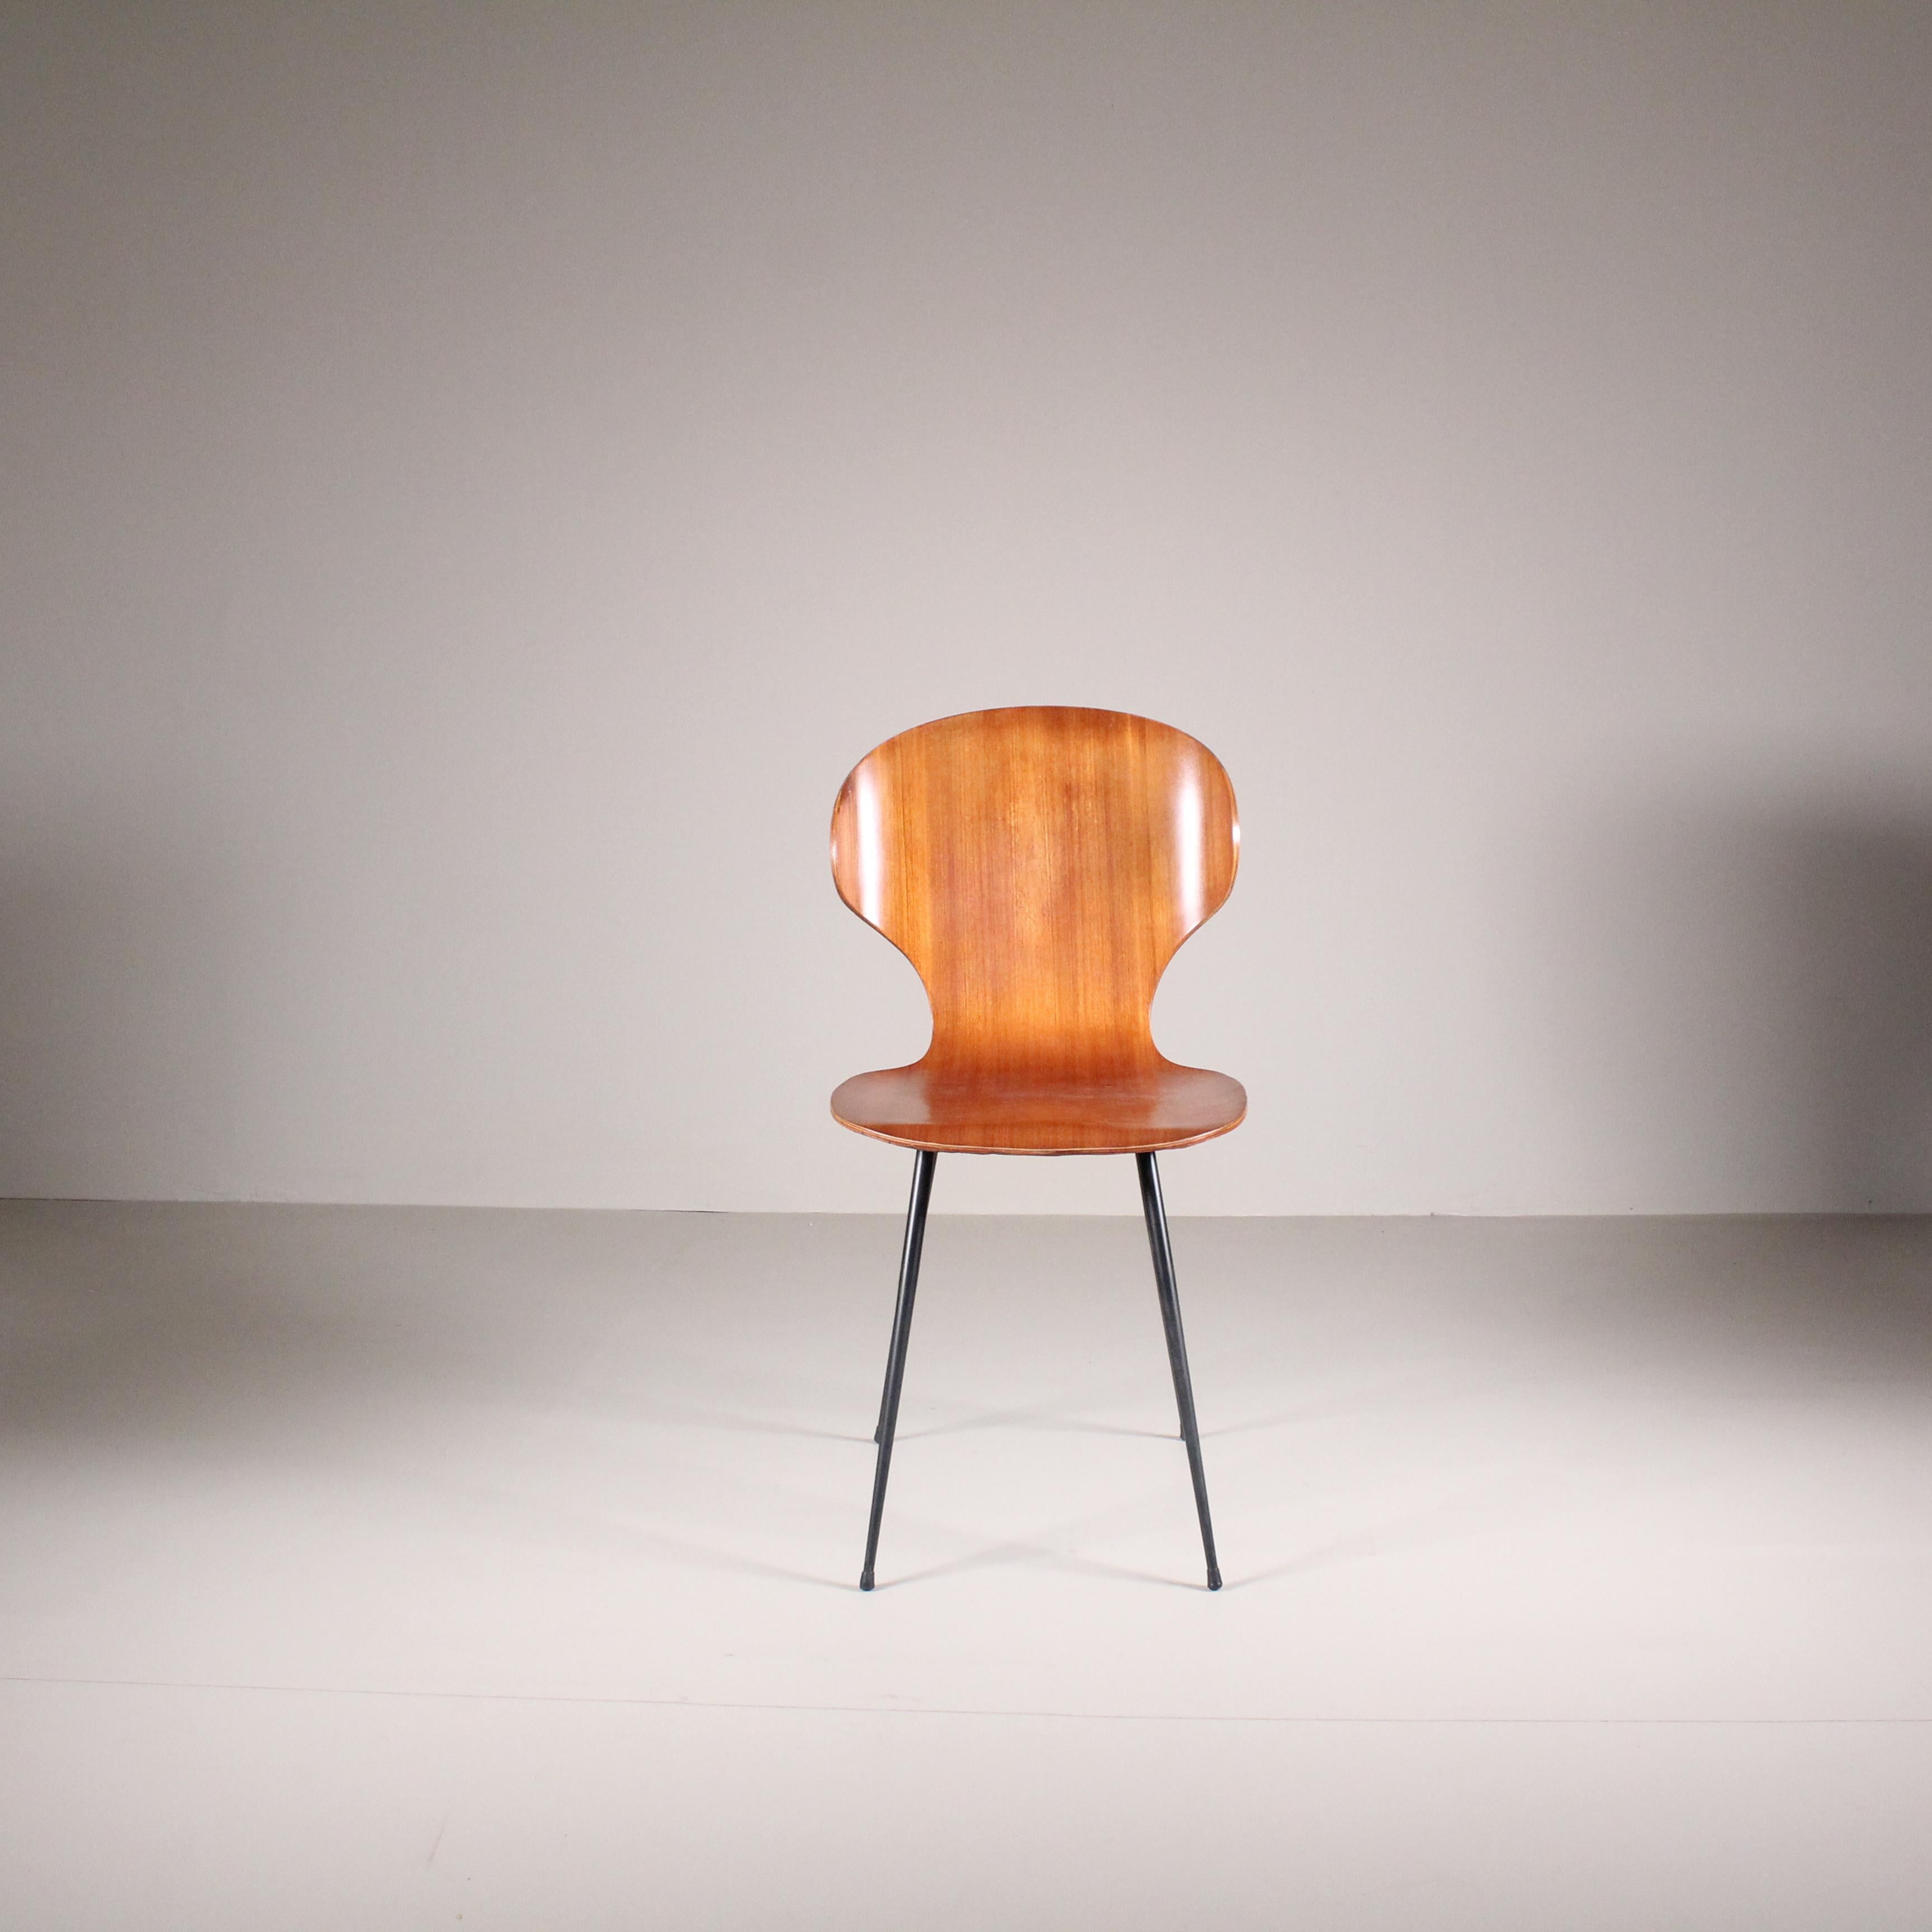 L'ensemble de 4 chaises Lulli, conçu par Carlo Ratti à l'âge d'or du design italien en 1950, incarne l'élégance intemporelle et l'innovation structurelle. Fabriquées par Industria Legni Curvati, ces chaises représentent une fusion harmonieuse de